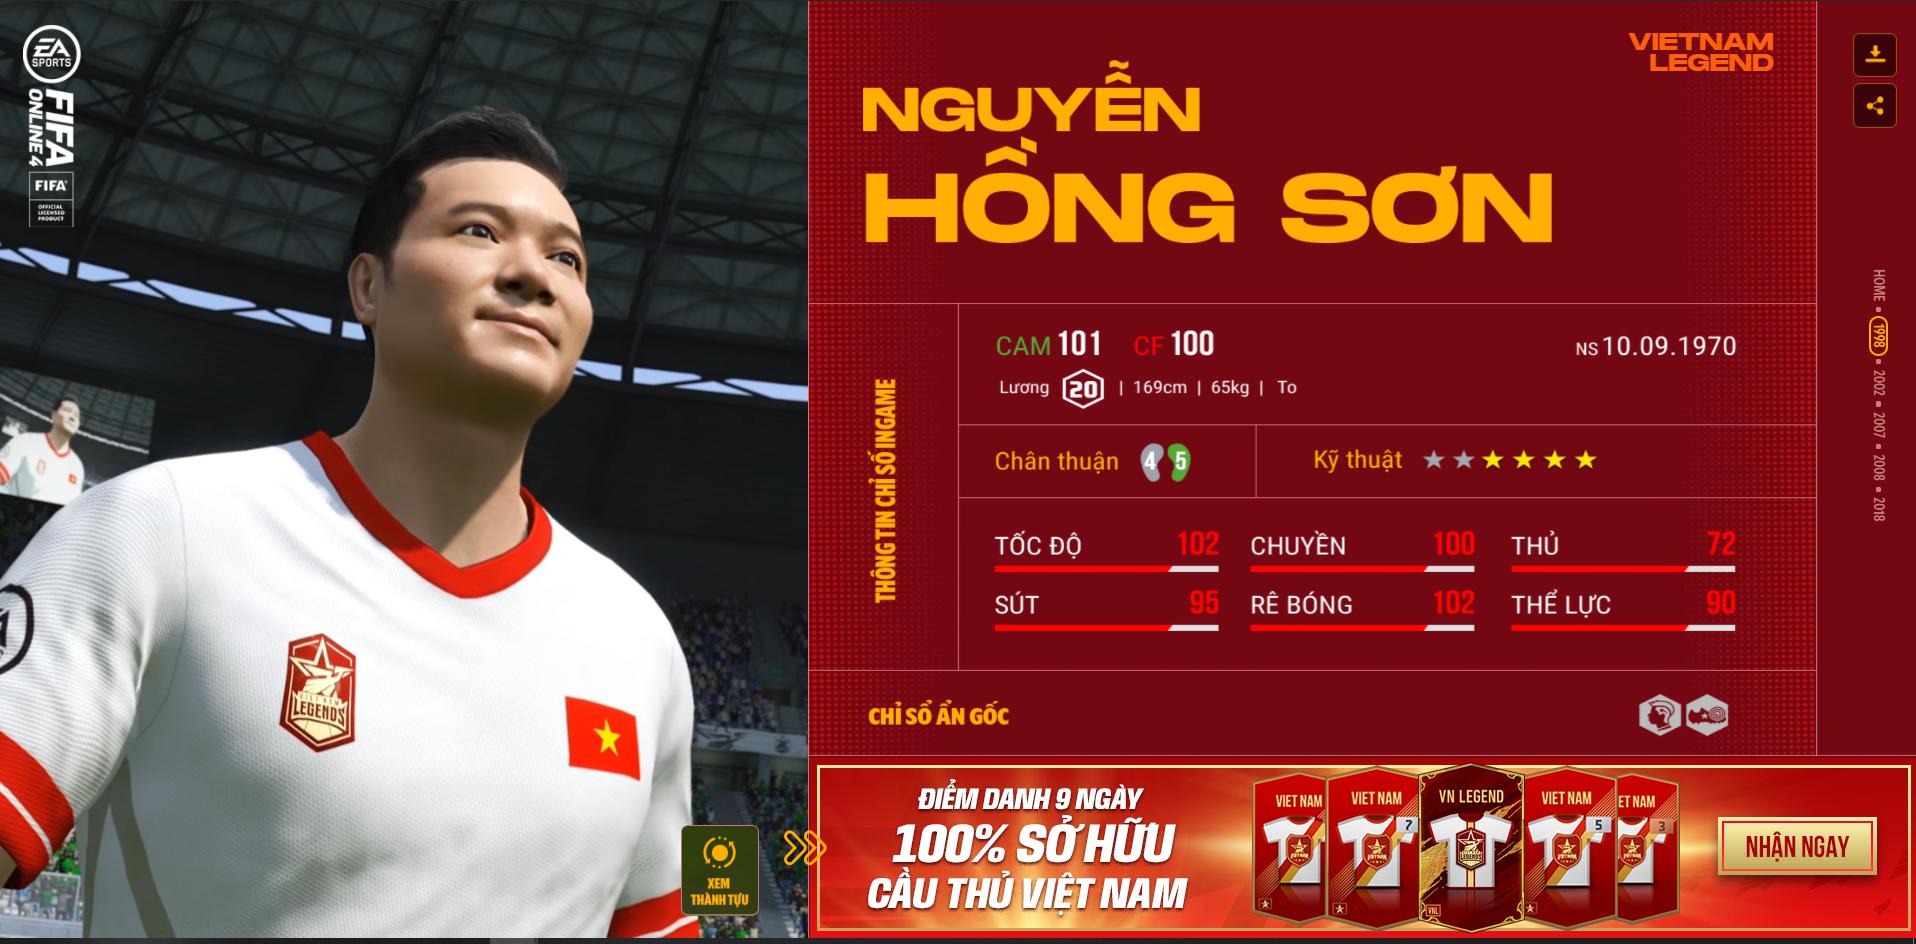 Hồng Sơn và các huyền thoại bóng đá Việt Nam bất ngờ xuất hiện trong FIFA Online 4 - Ảnh 3.